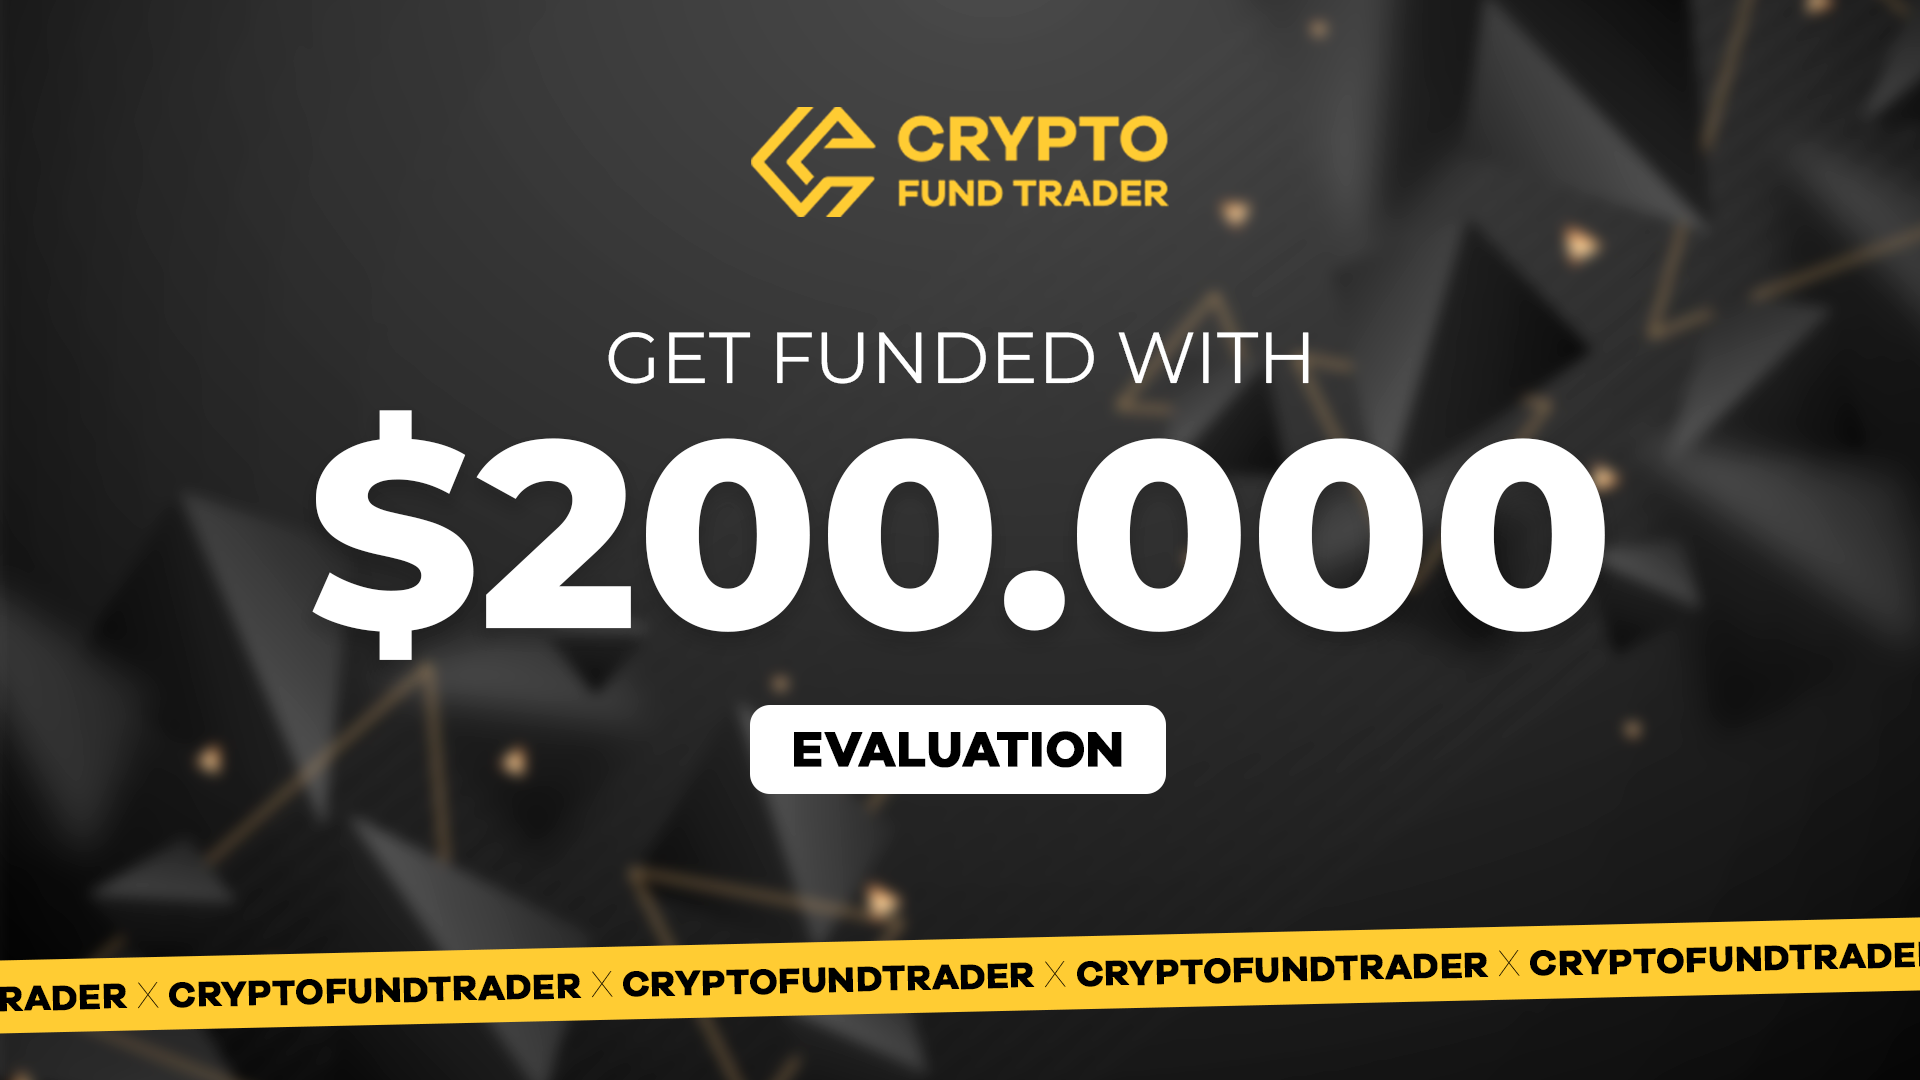 [$ 1127.7] Crypto Fund Trader - $200.000 Evaluation Voucher